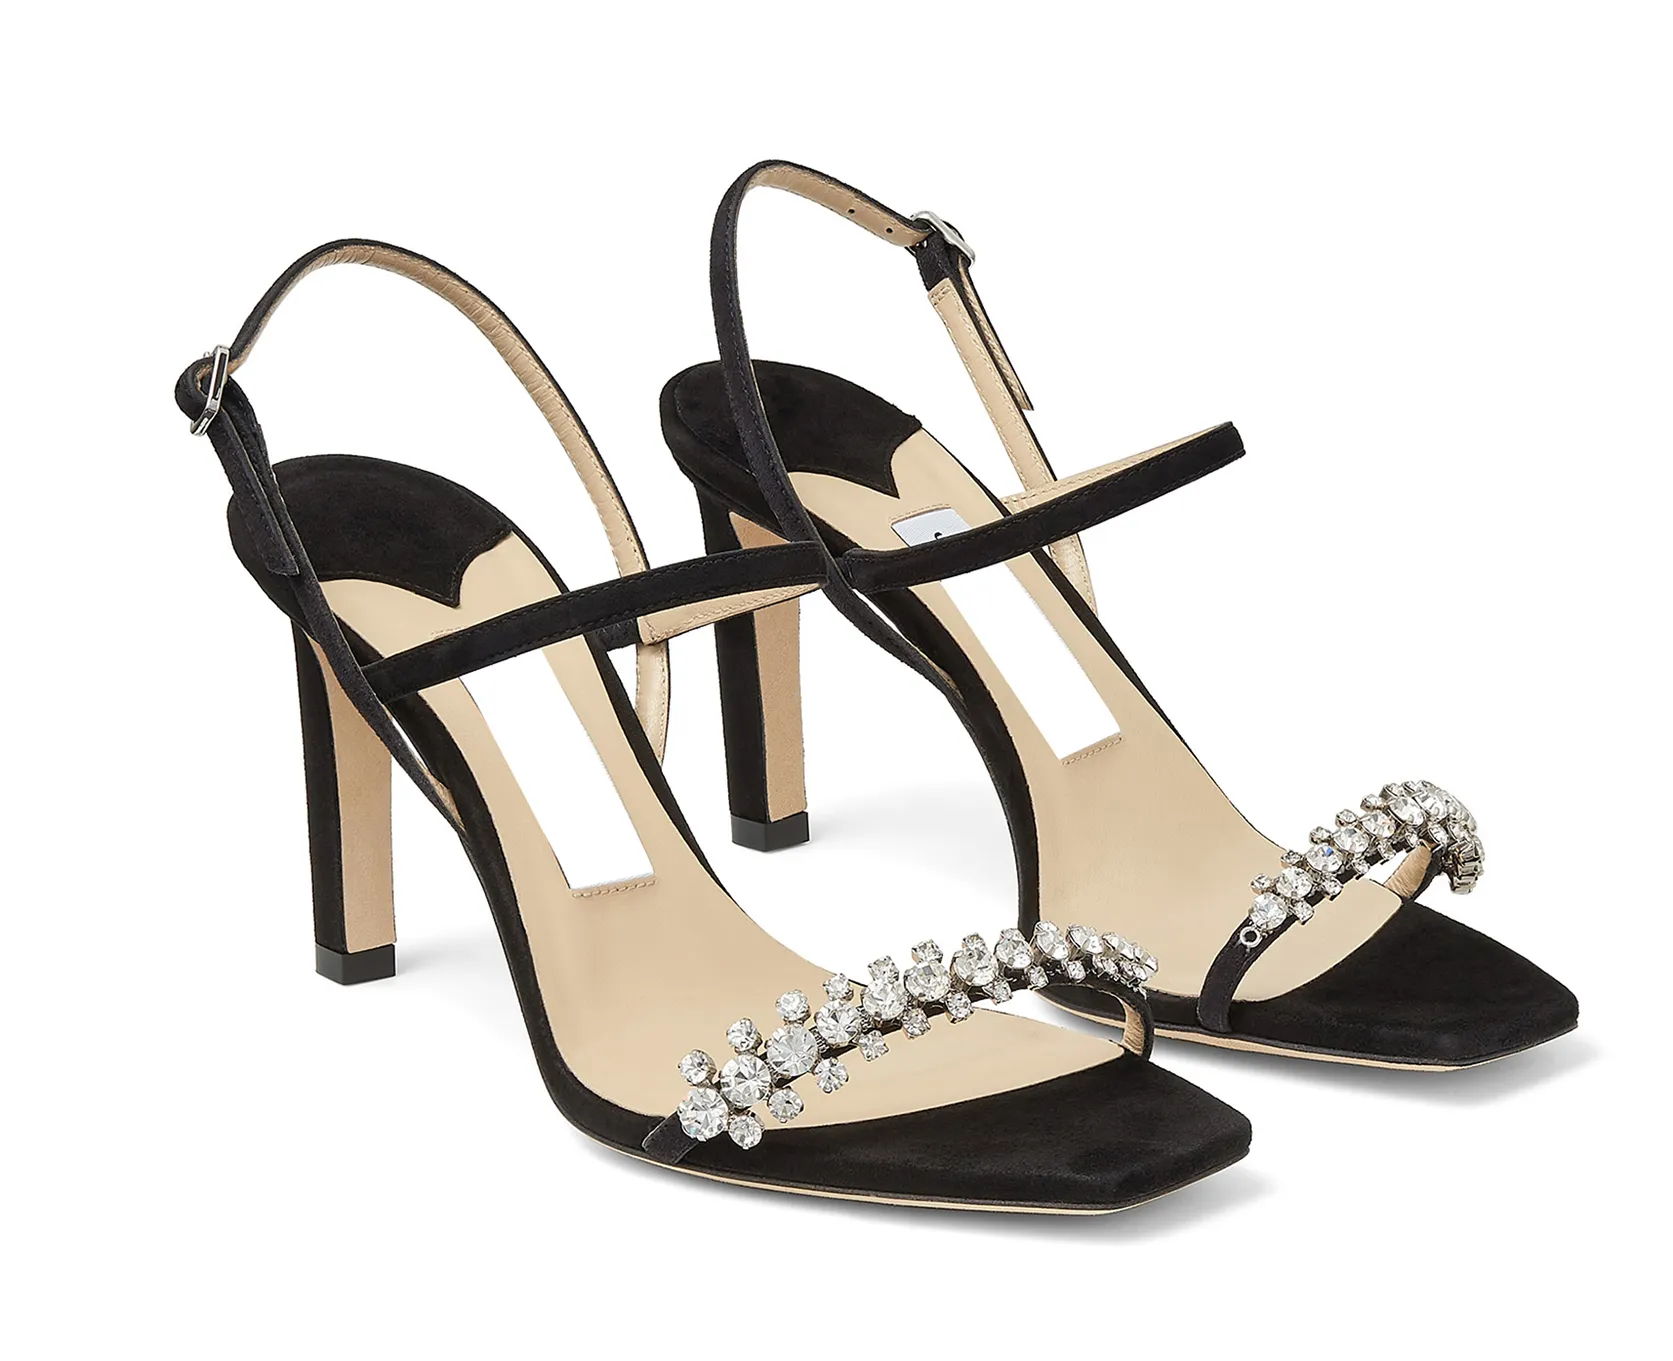 Nuove scarpe con tacco alto sexy con strass a punta quadrata con tacco alto in camoscio e sandali da donna neri gladiatore firmati EU35-43 con scatola